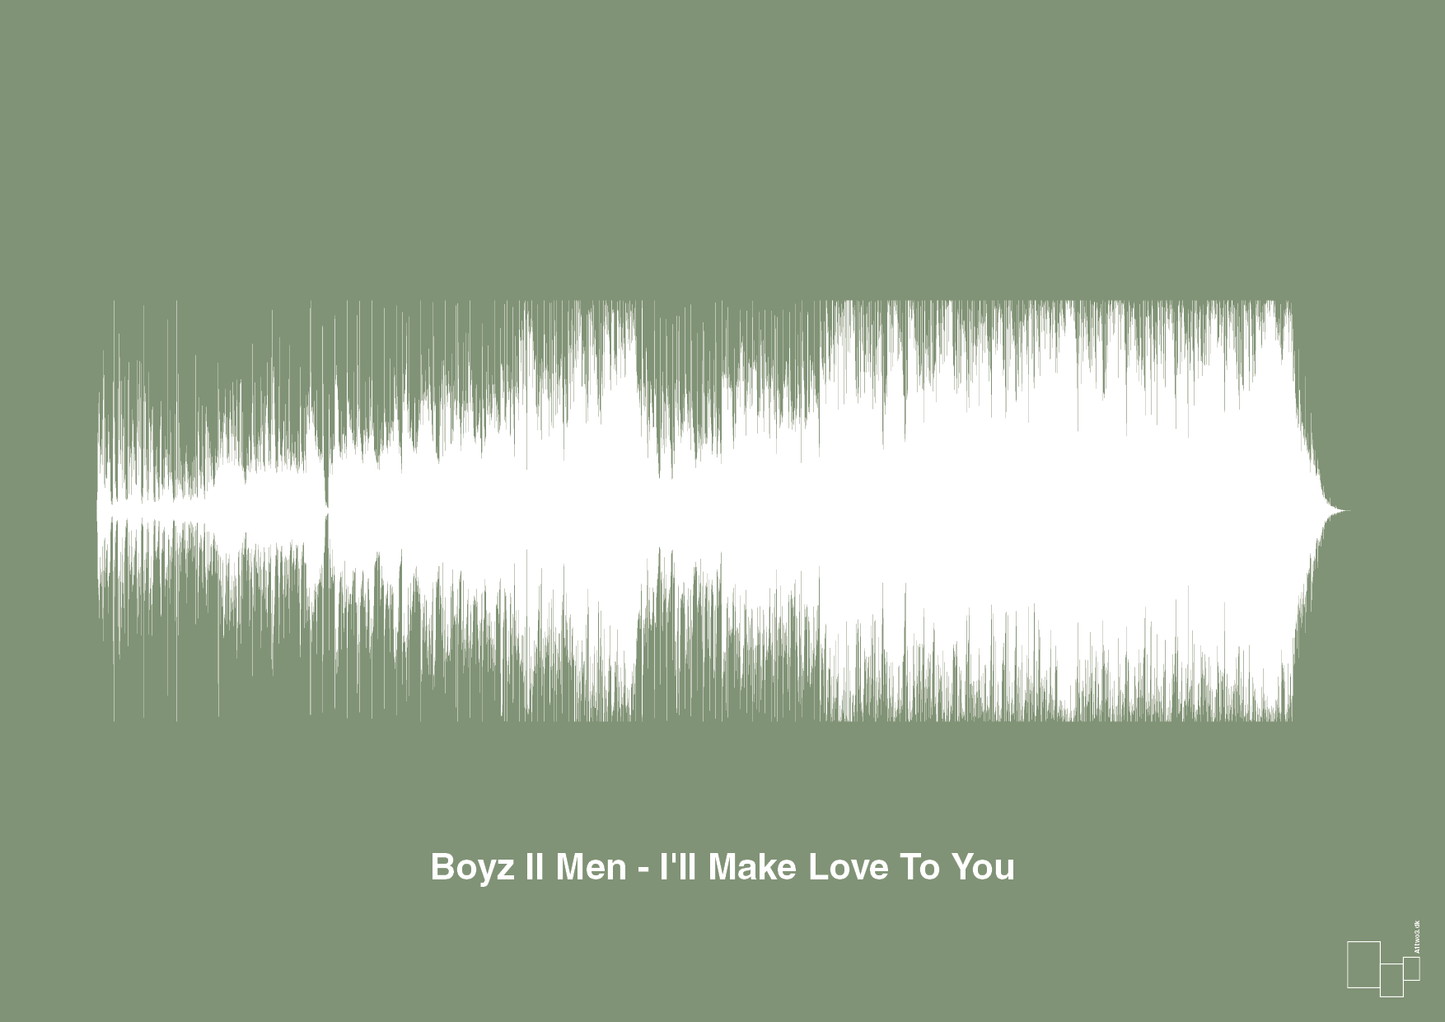 boyz II men - i'll make love to you - Plakat med Musik i Jade